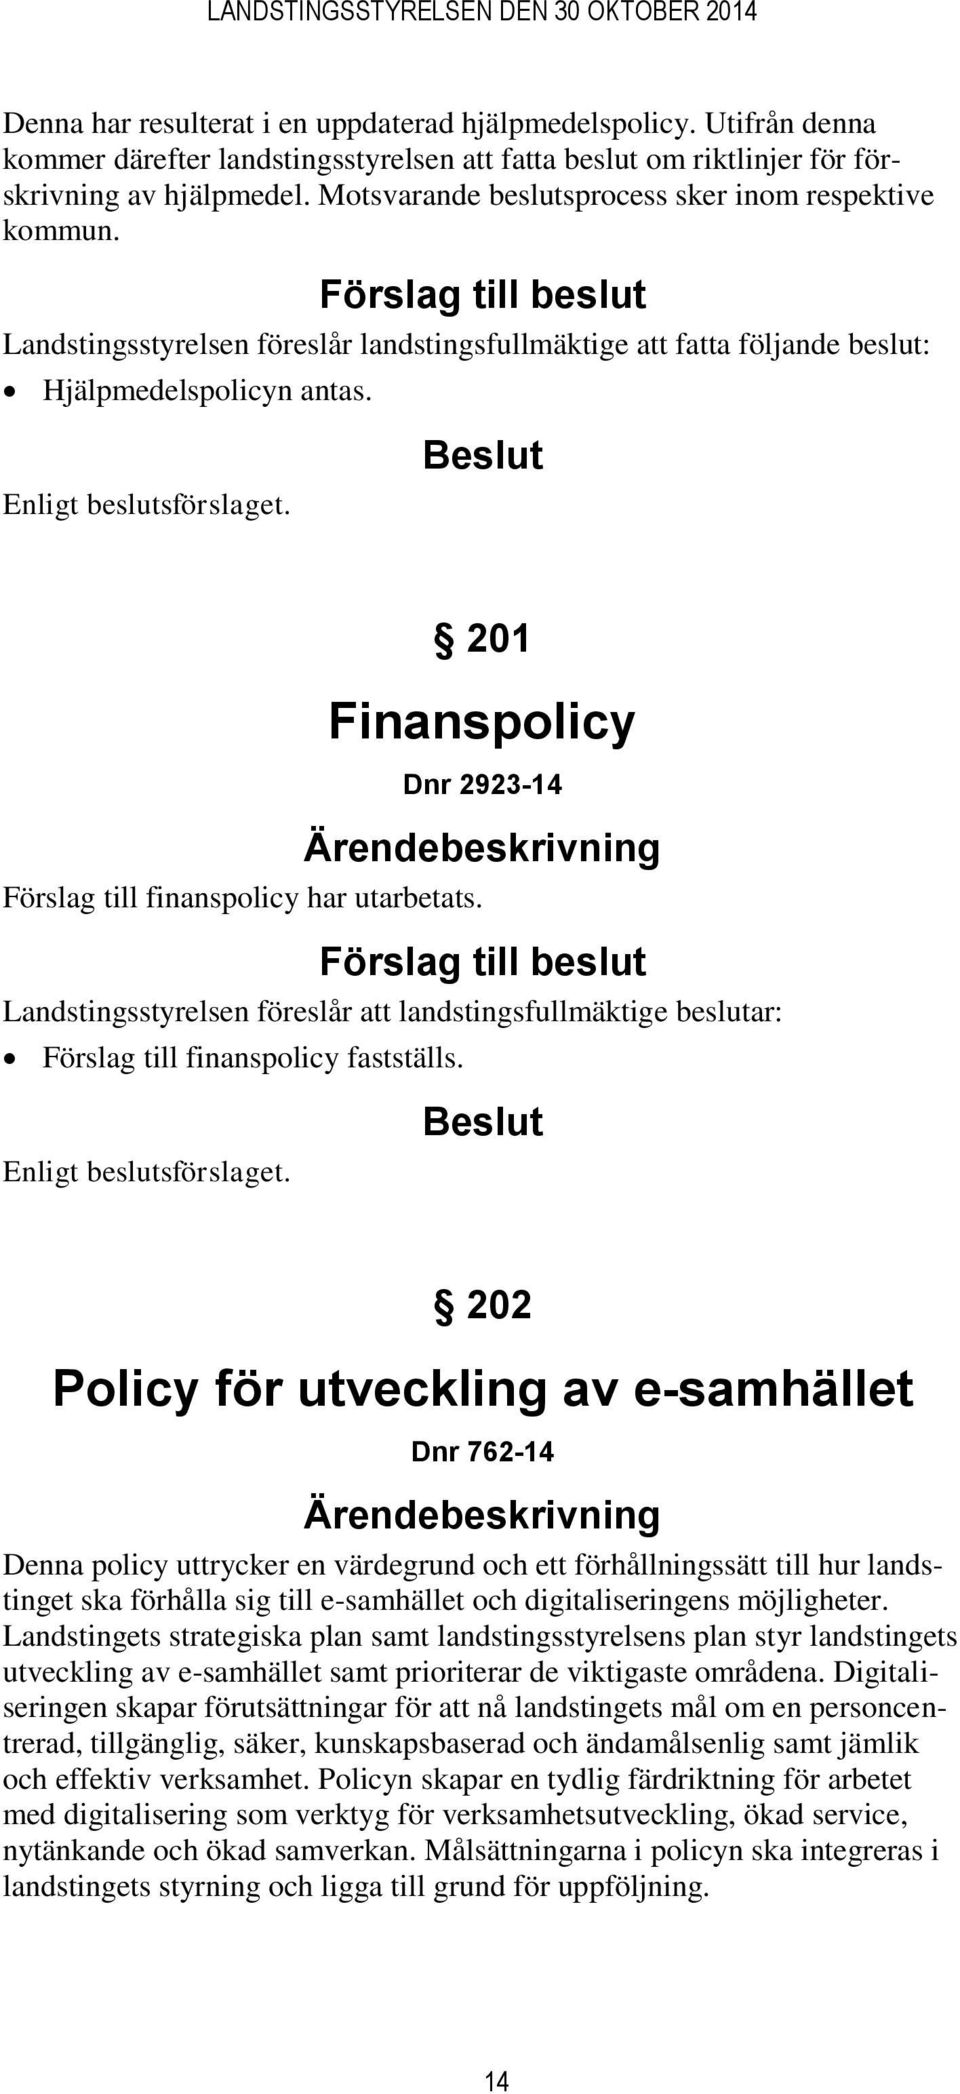 201 Finanspolicy Dnr 2923-14 Förslag till finanspolicy har utarbetats. Landstingsstyrelsen föreslår att landstingsfullmäktige beslutar: Förslag till finanspolicy fastställs.